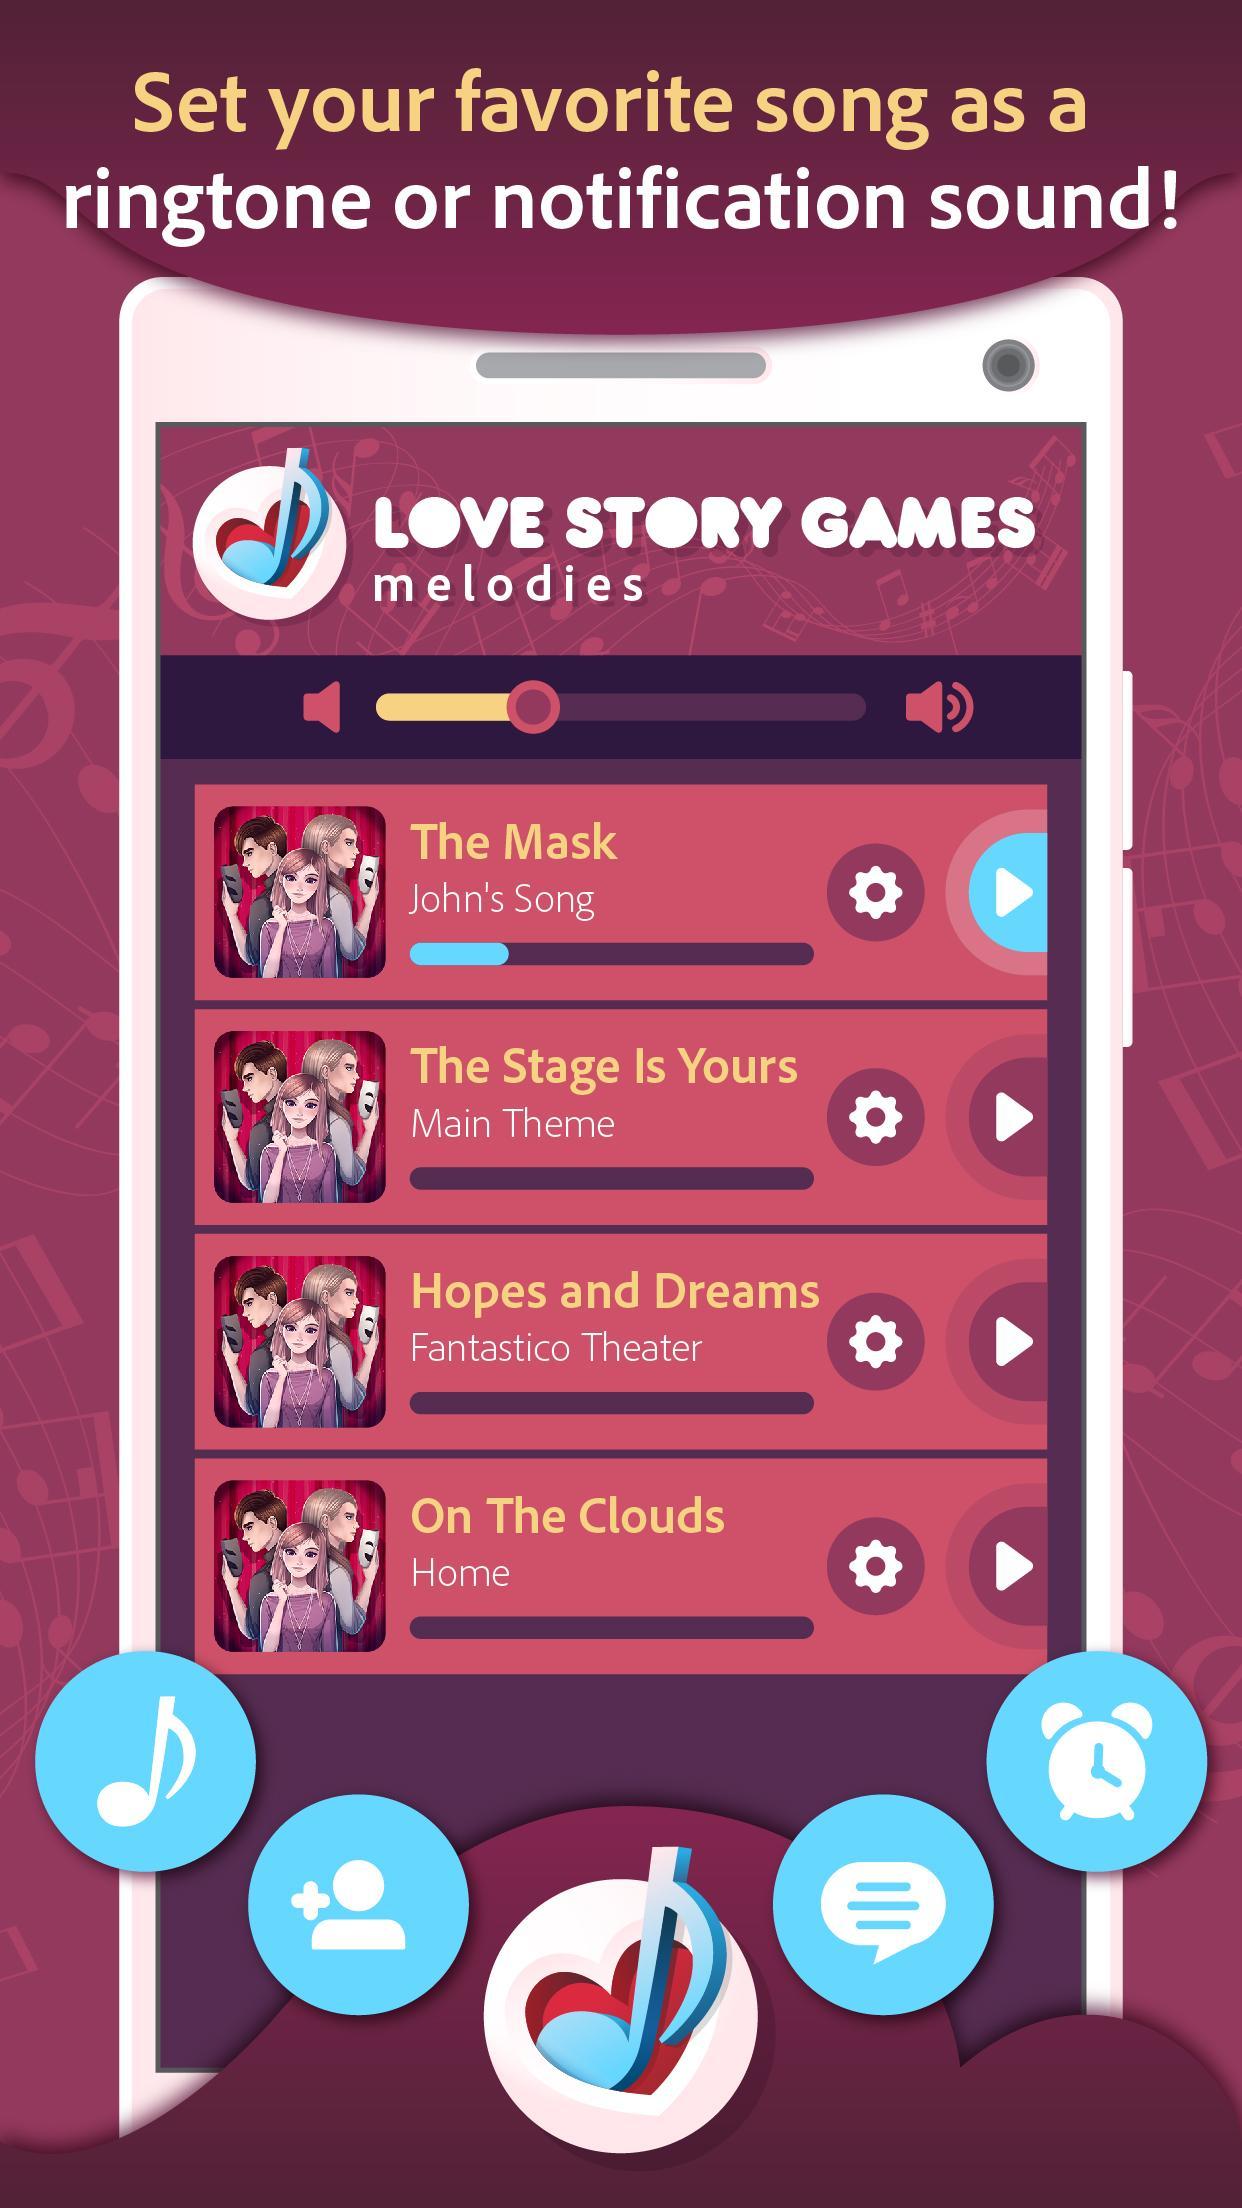 لعبة قصة حب نغمات رنين For Android Apk Download